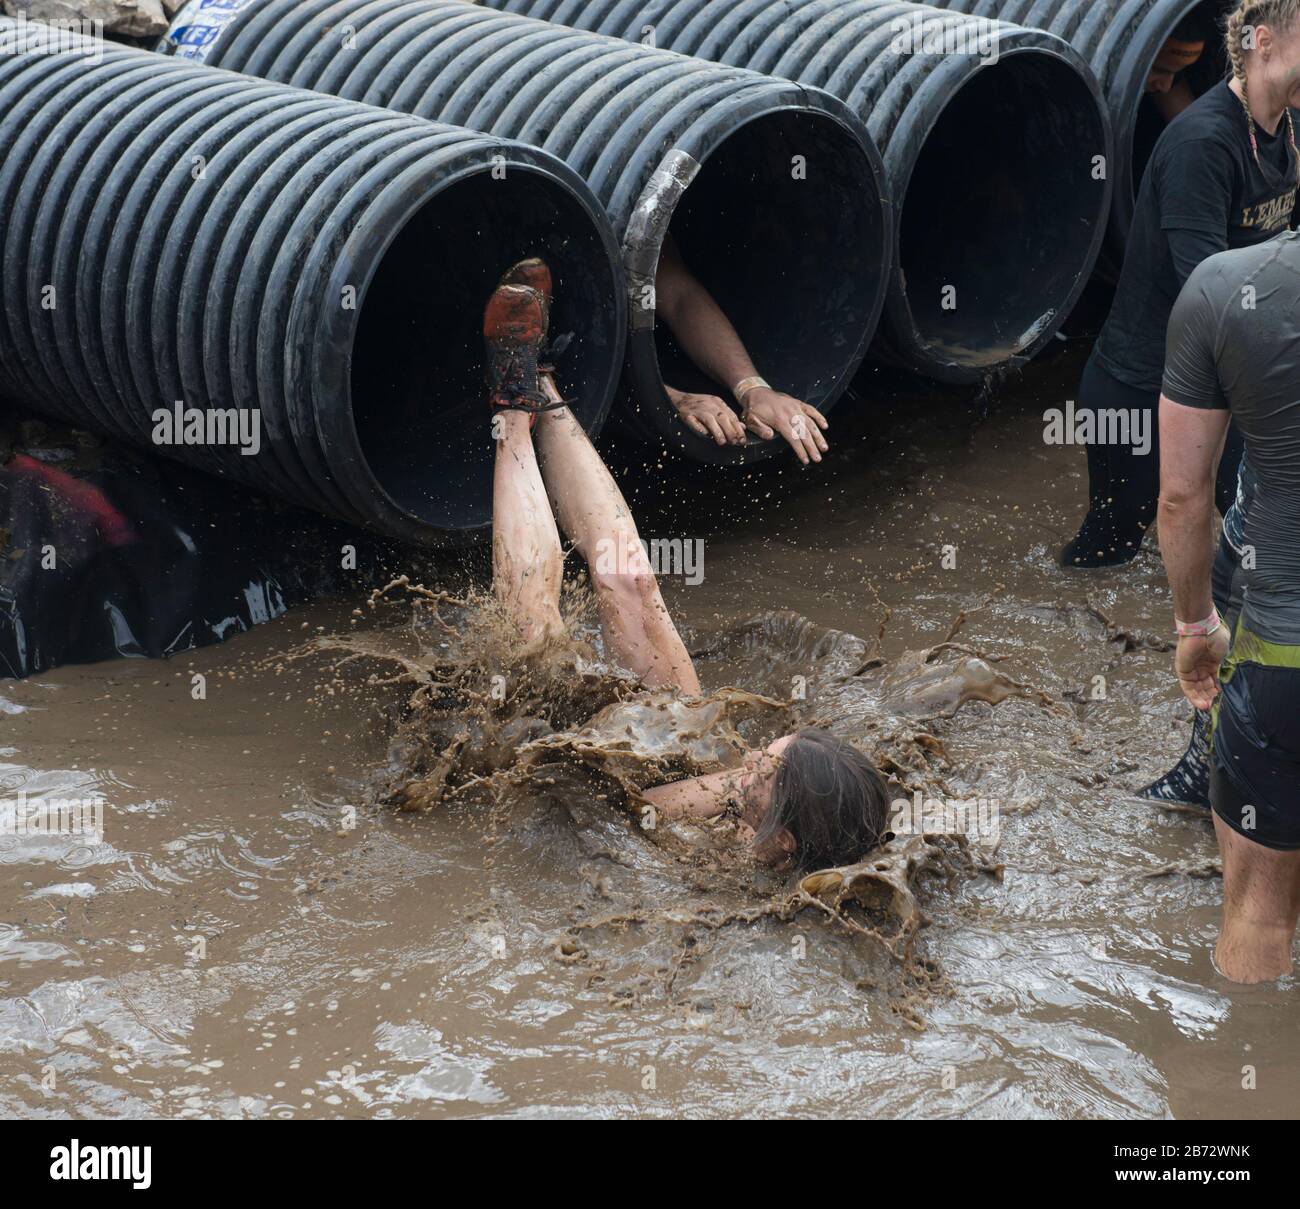 Difficile Mudder ostacolo corso: Partecipanti affrontare l'ostacolo Shawshanked caduta in acqua fredda fangosa Foto Stock